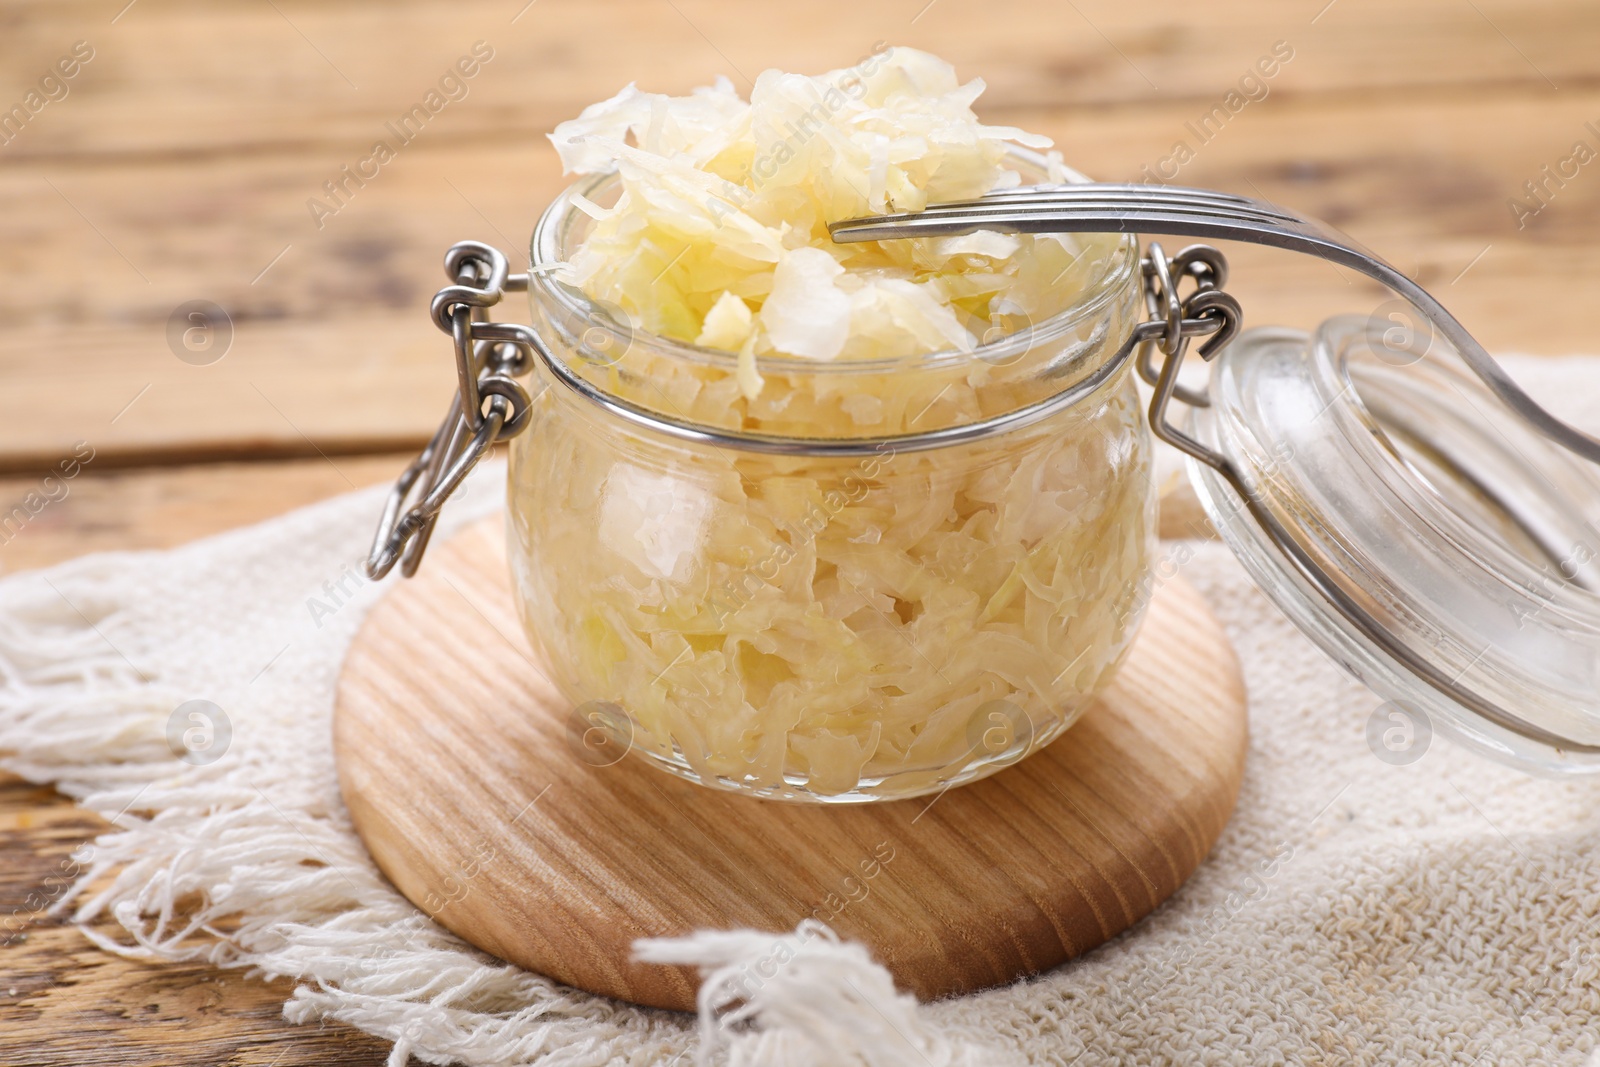 Photo of Glass jar of tasty sauerkraut on wooden table, closeup